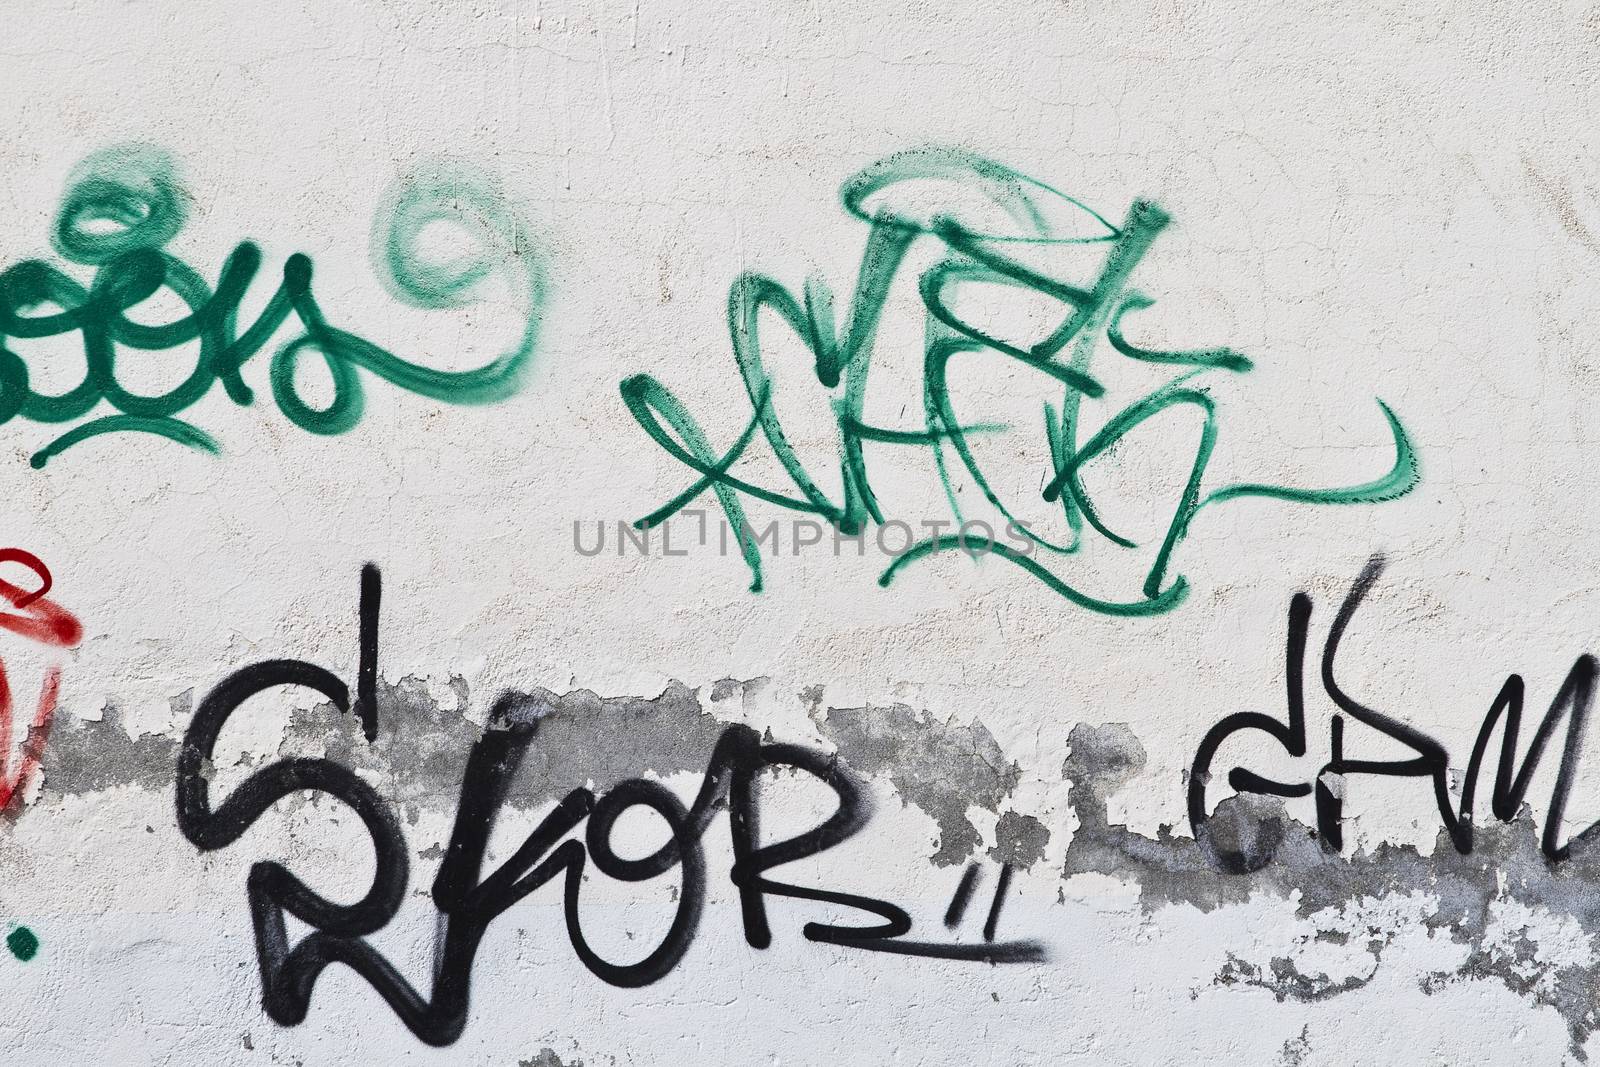 Graffiti on grunge wall by FernandoCortes